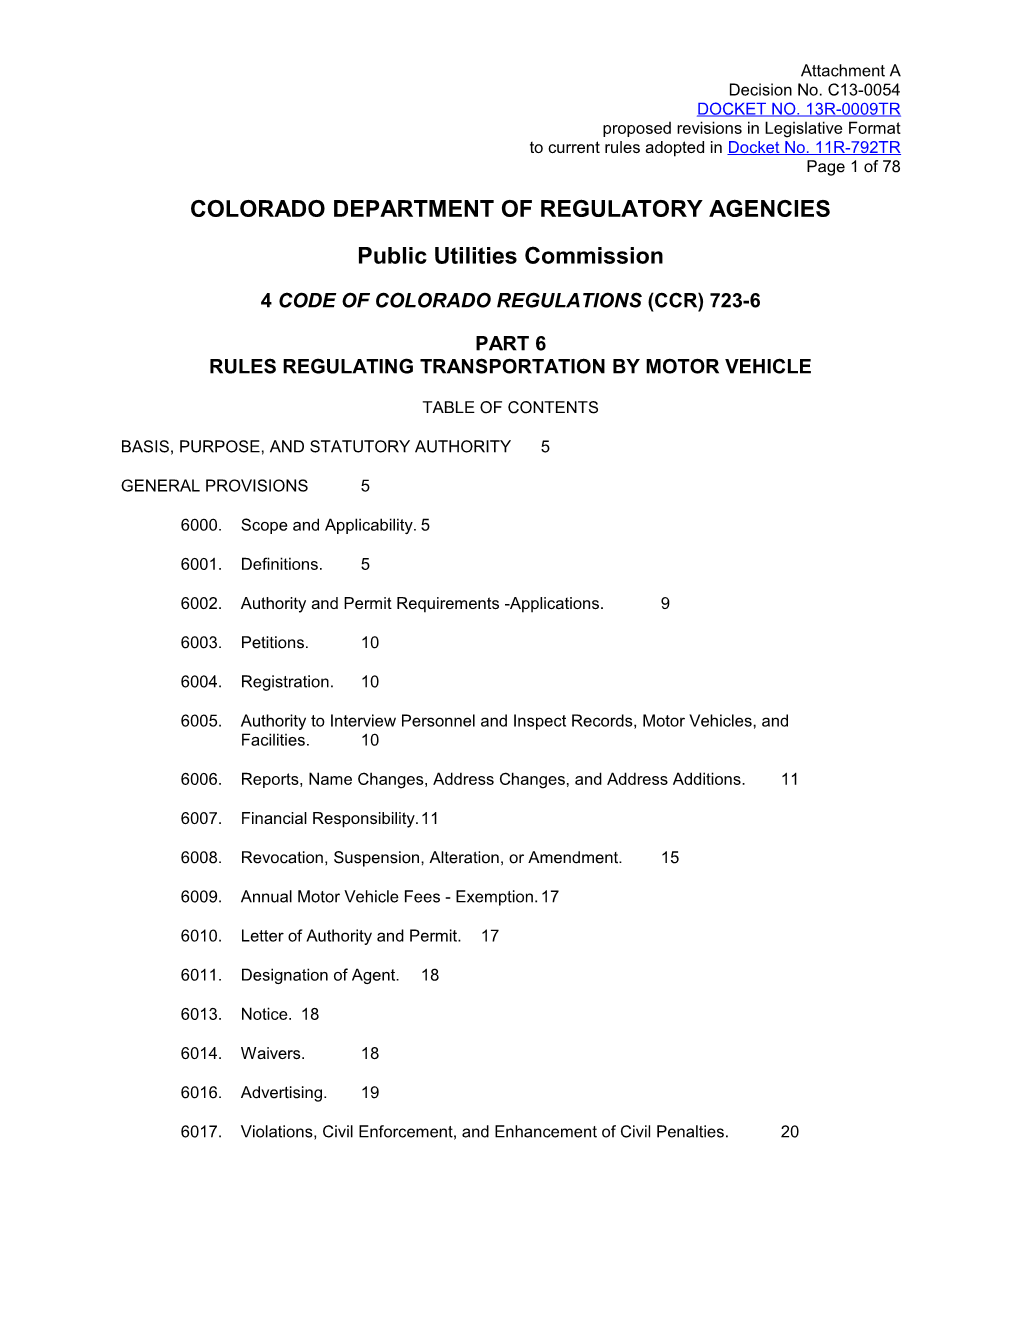 Colorado Department of Regulatory Agencies s4